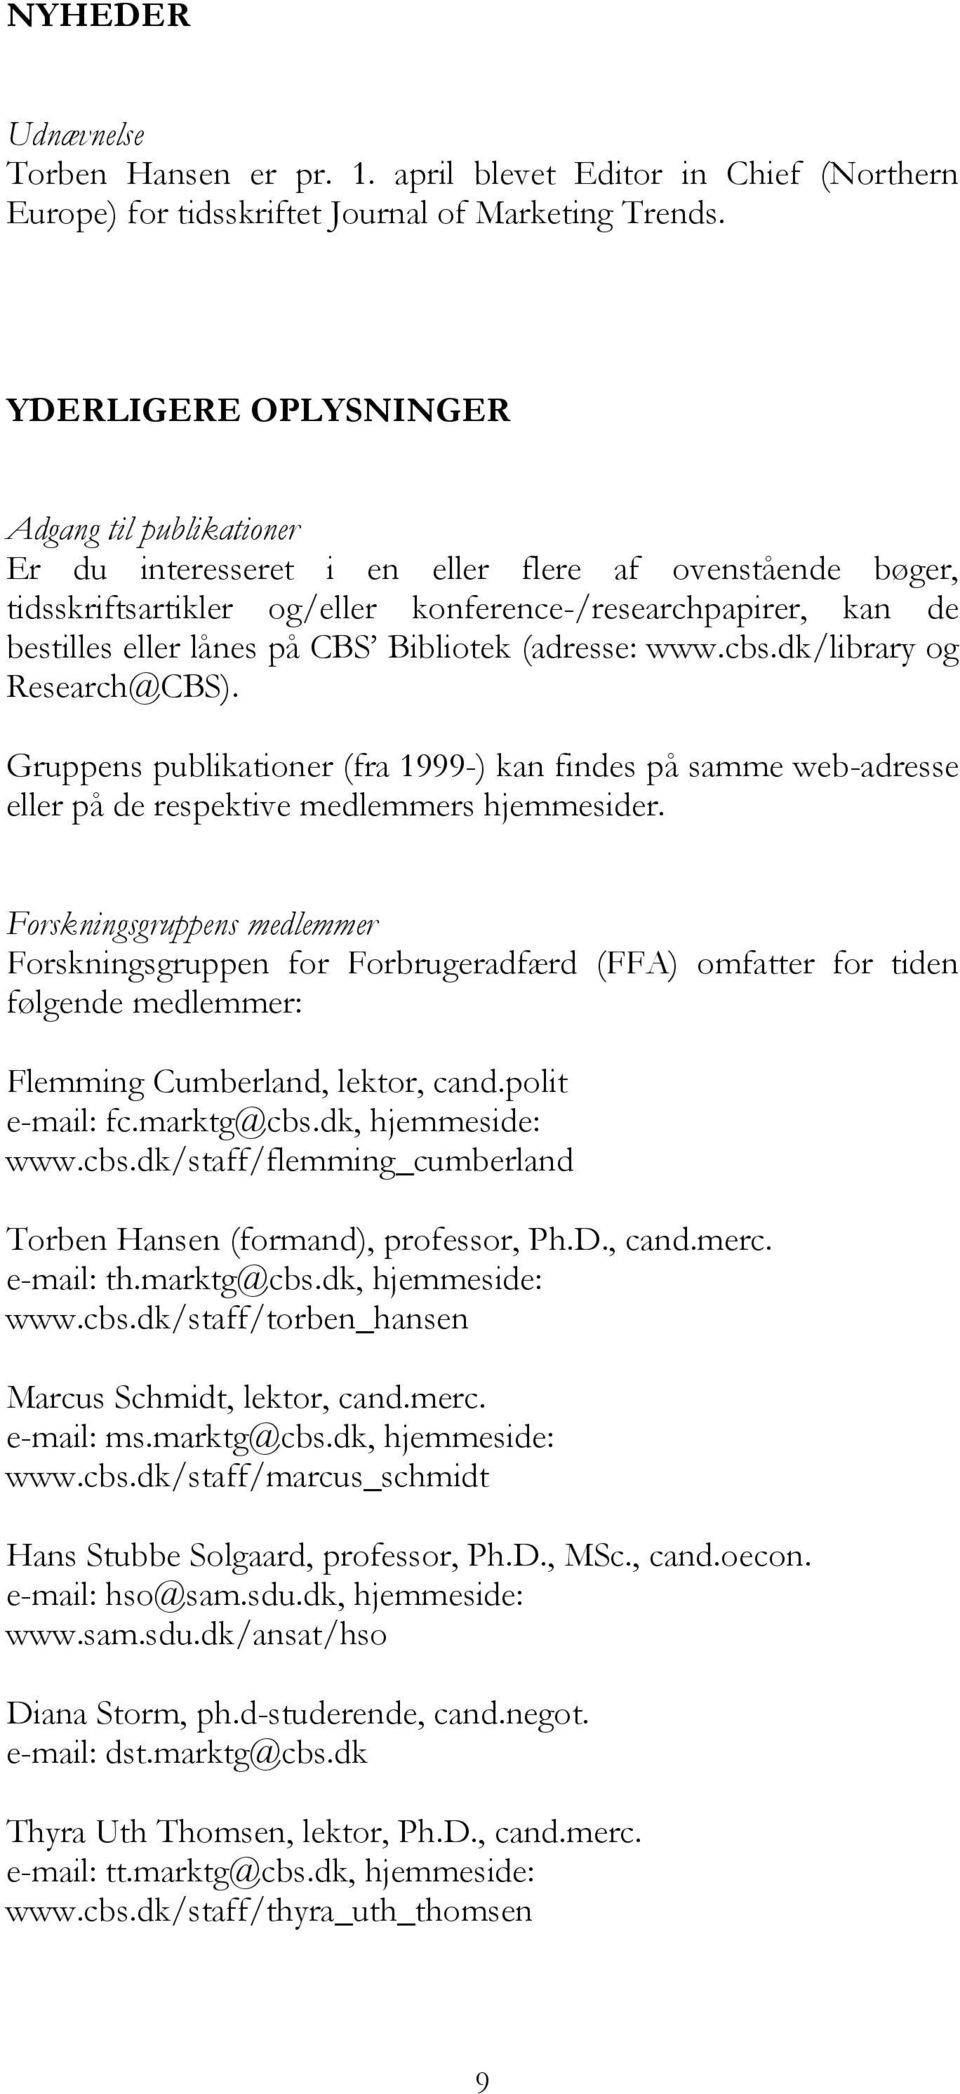 Bibliotek (adresse: www.cbs.dk/library og Research@CBS). Gruppens publikationer (fra 1999-) kan findes på samme web-adresse eller på de respektive medlemmers hjemmesider.